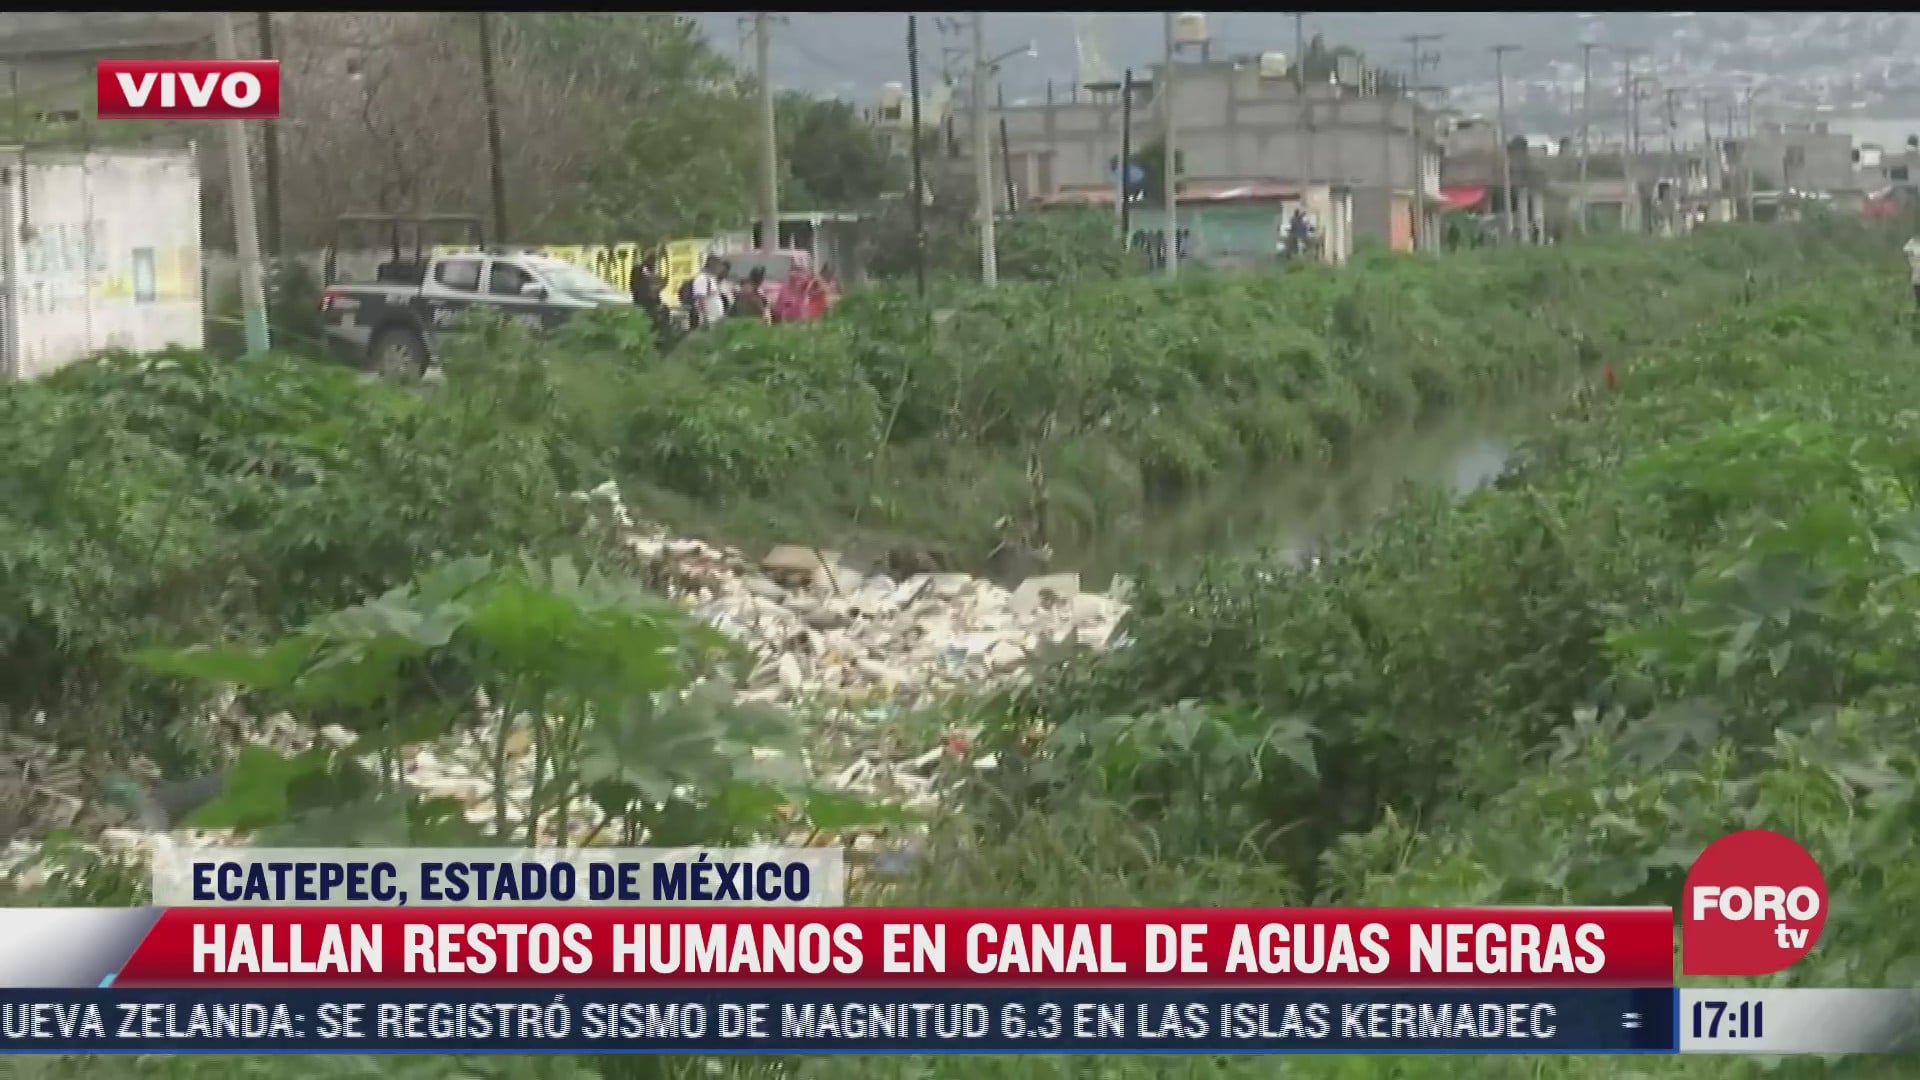 hallan restos humanos en canal de aguas negras en ecatepec